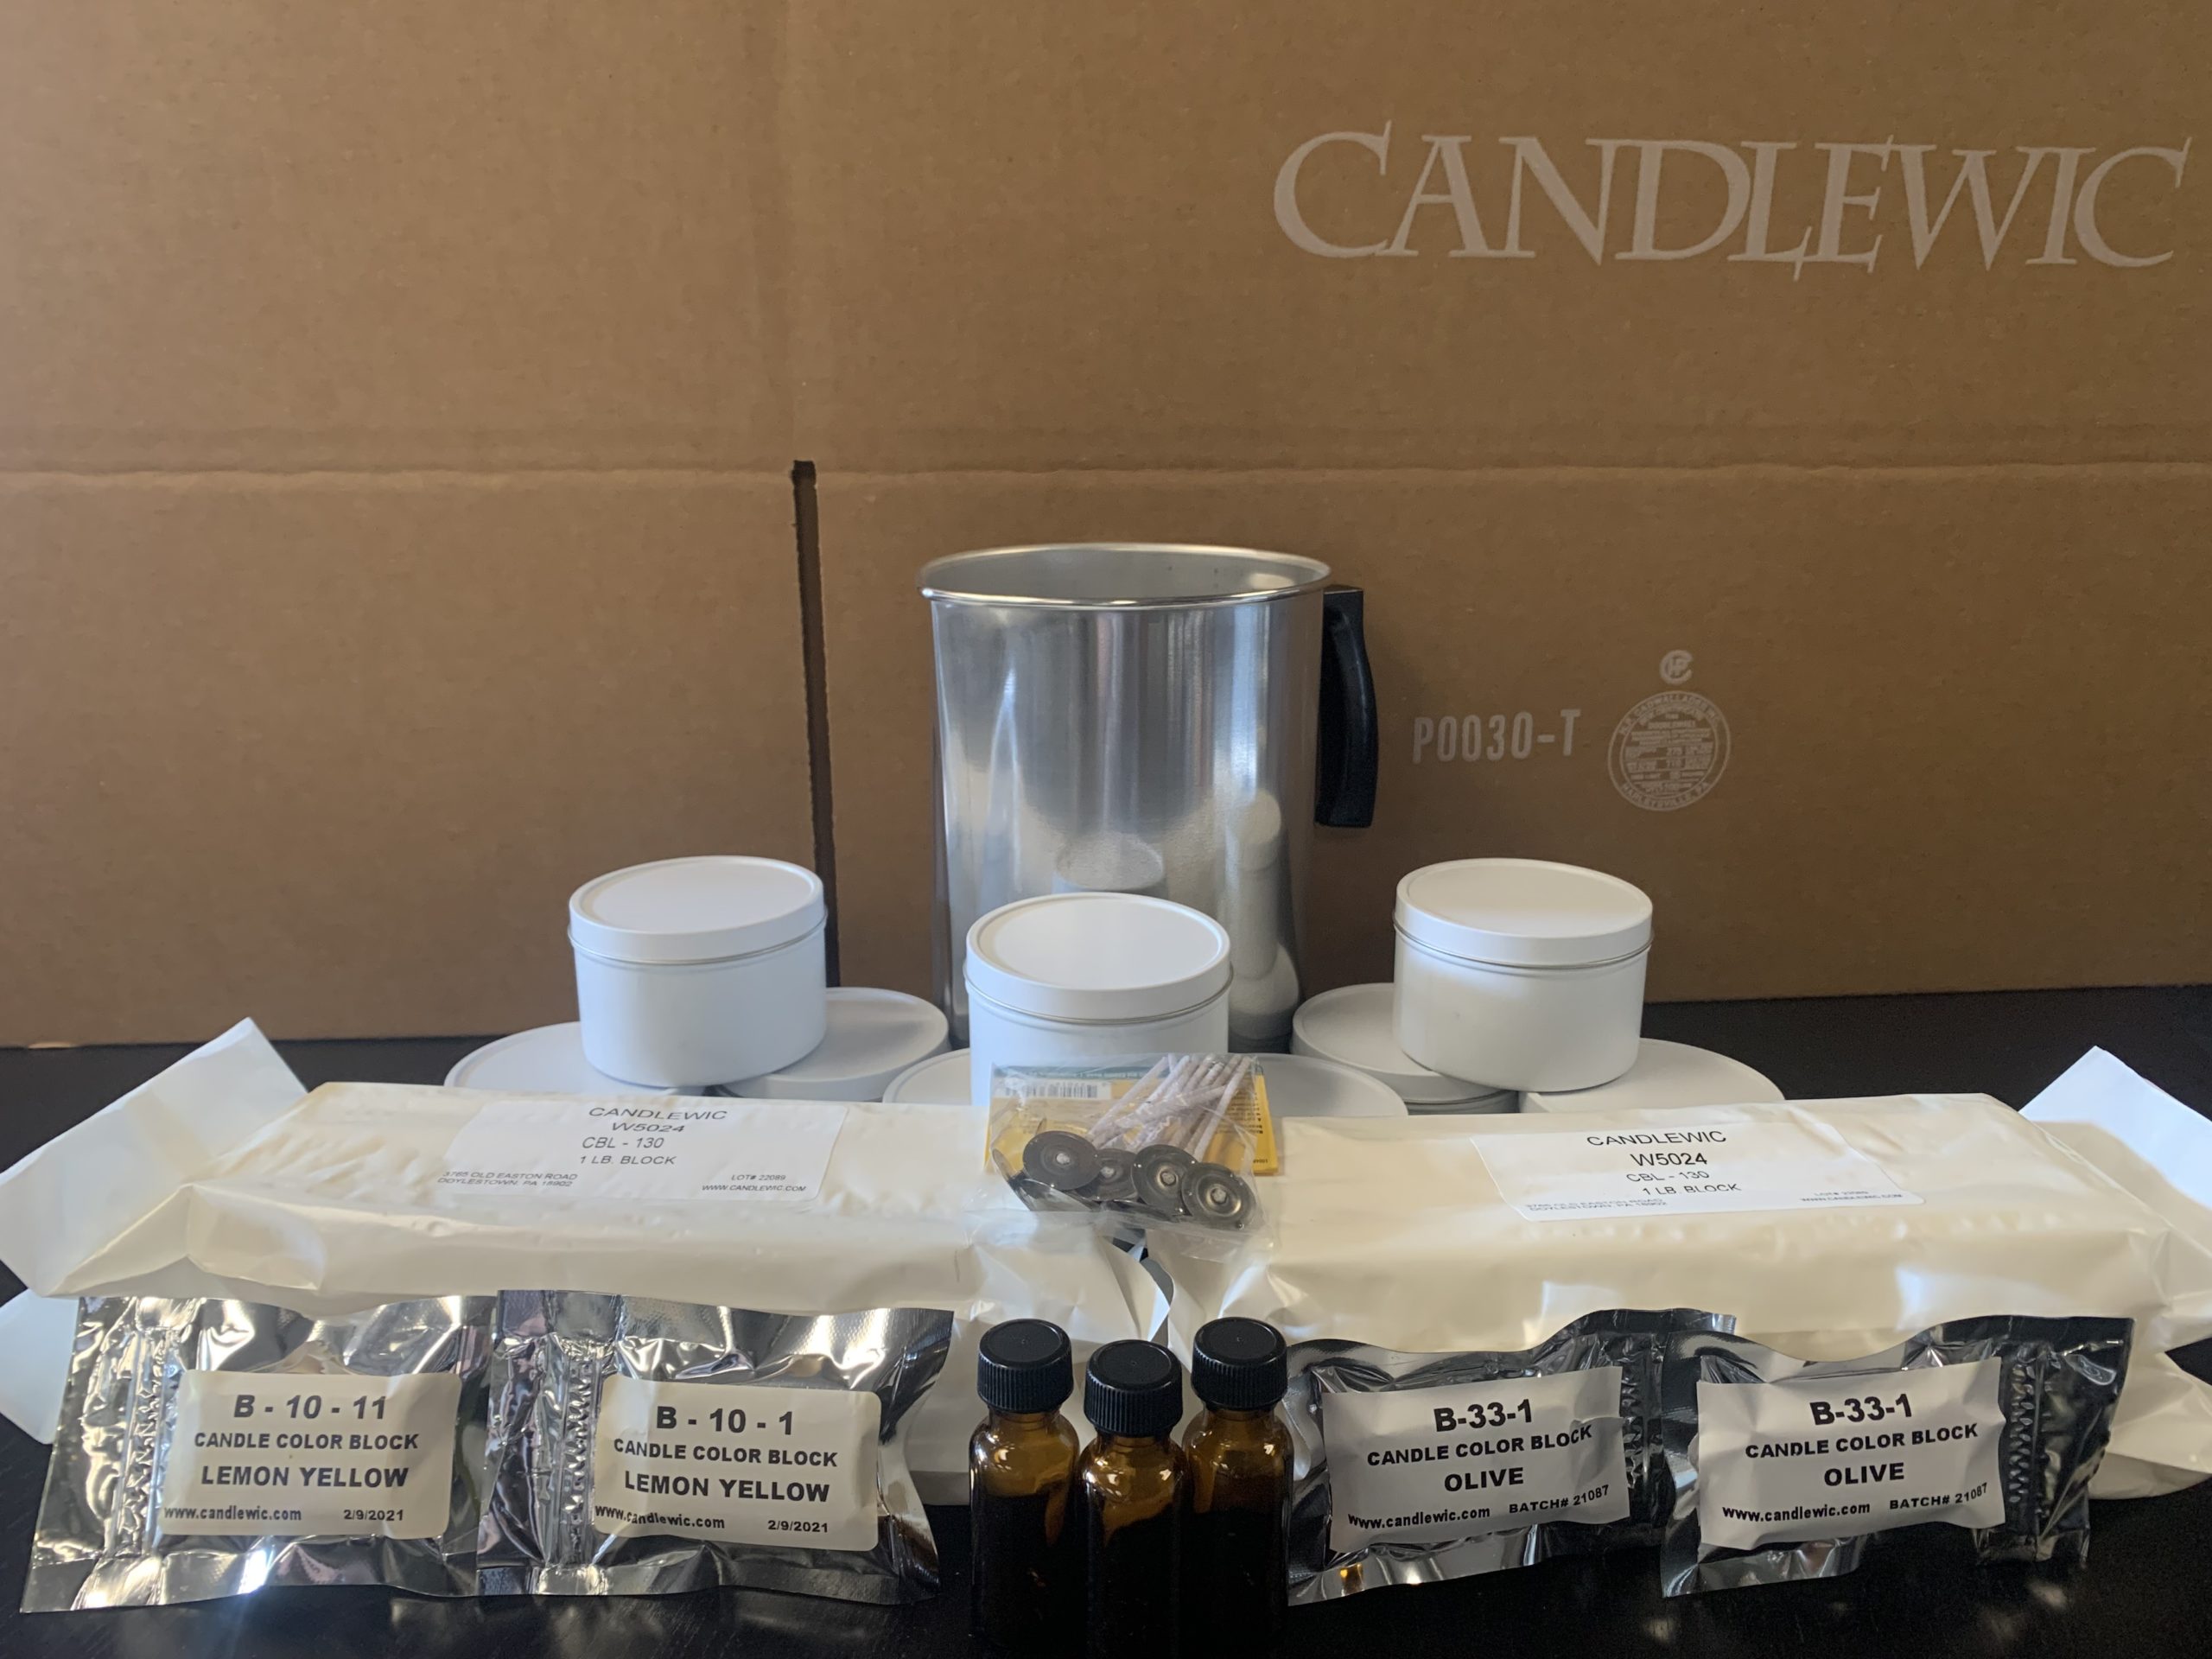 Candlewic's Para-soy kit